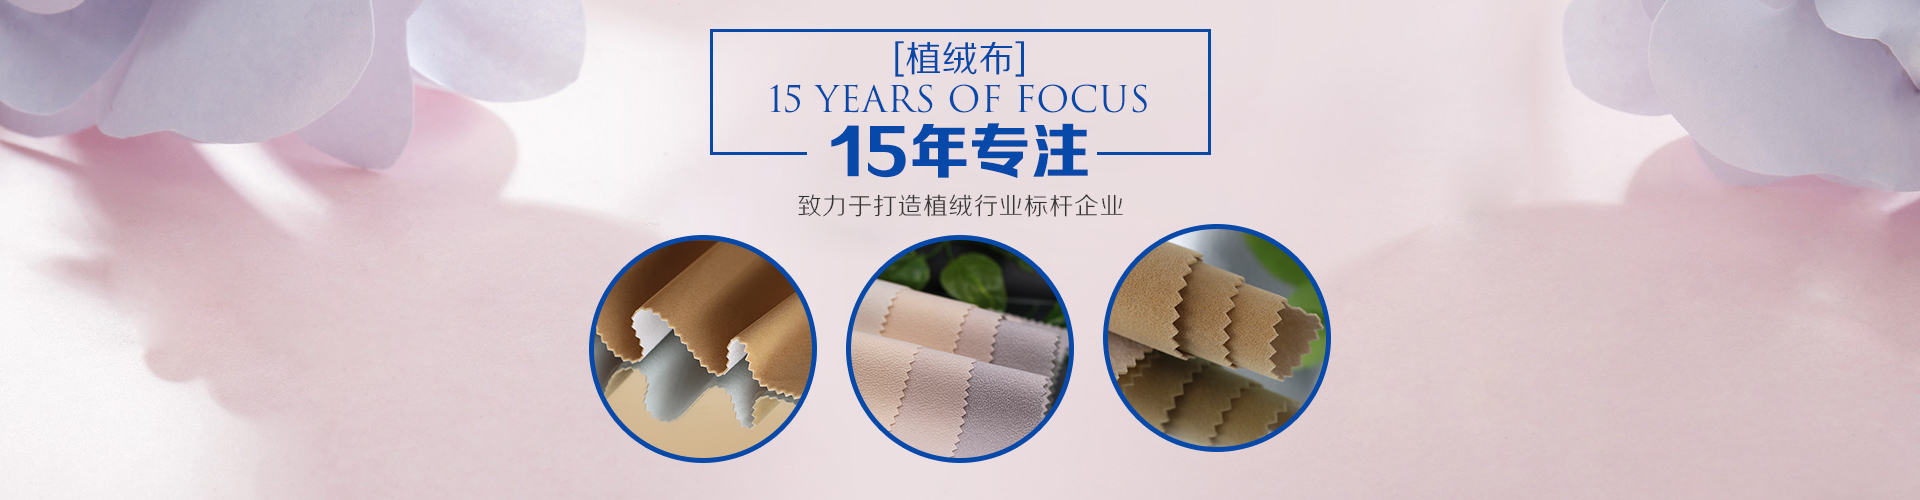 15年专注植绒布 ，致力于打造植绒行业标杆企业